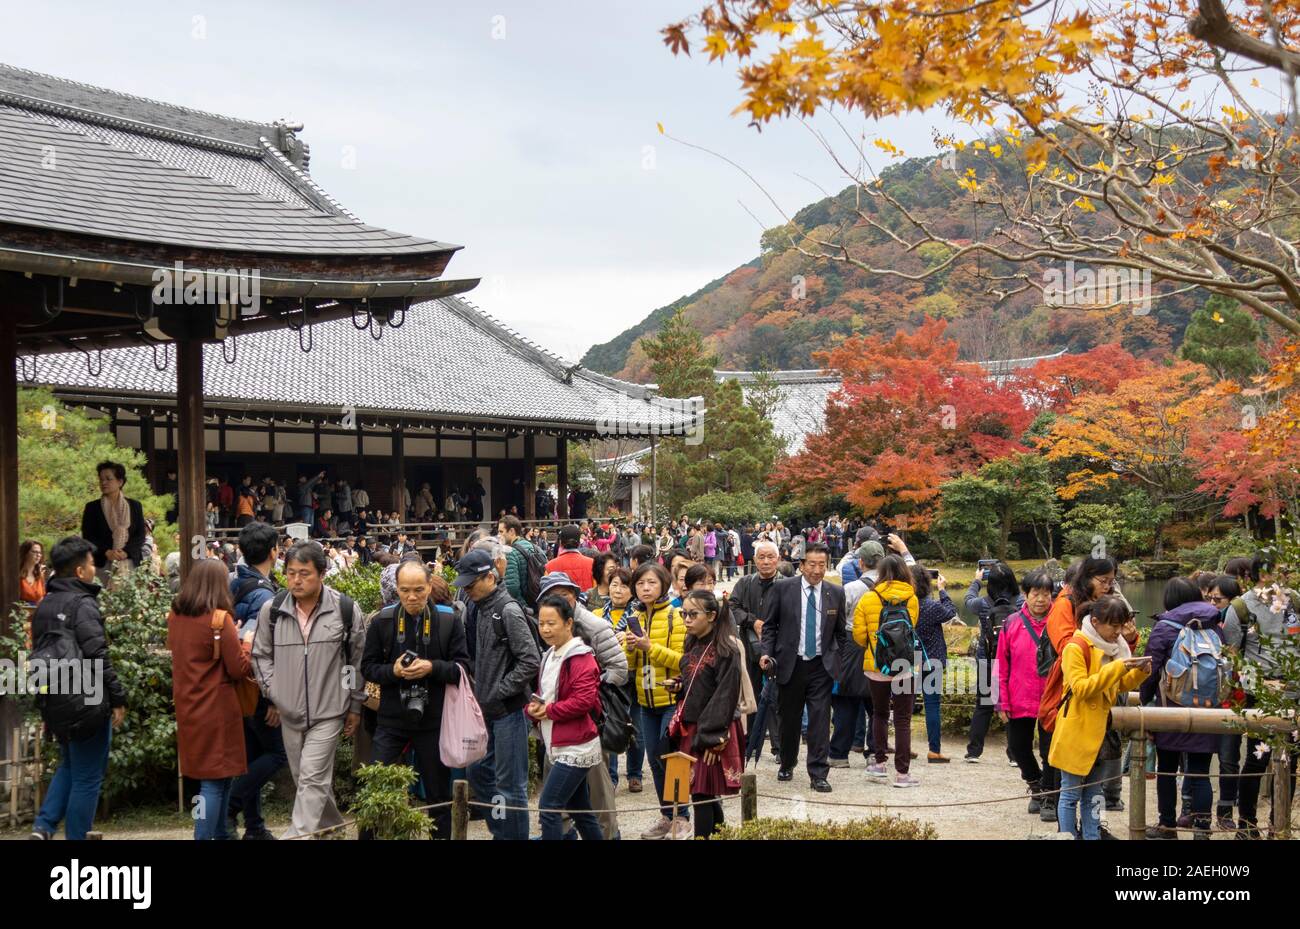 Massen von Touristen an der Tenryū-ji Zen-buddhistischen Tempel, Kyoto, Japan Stockfoto